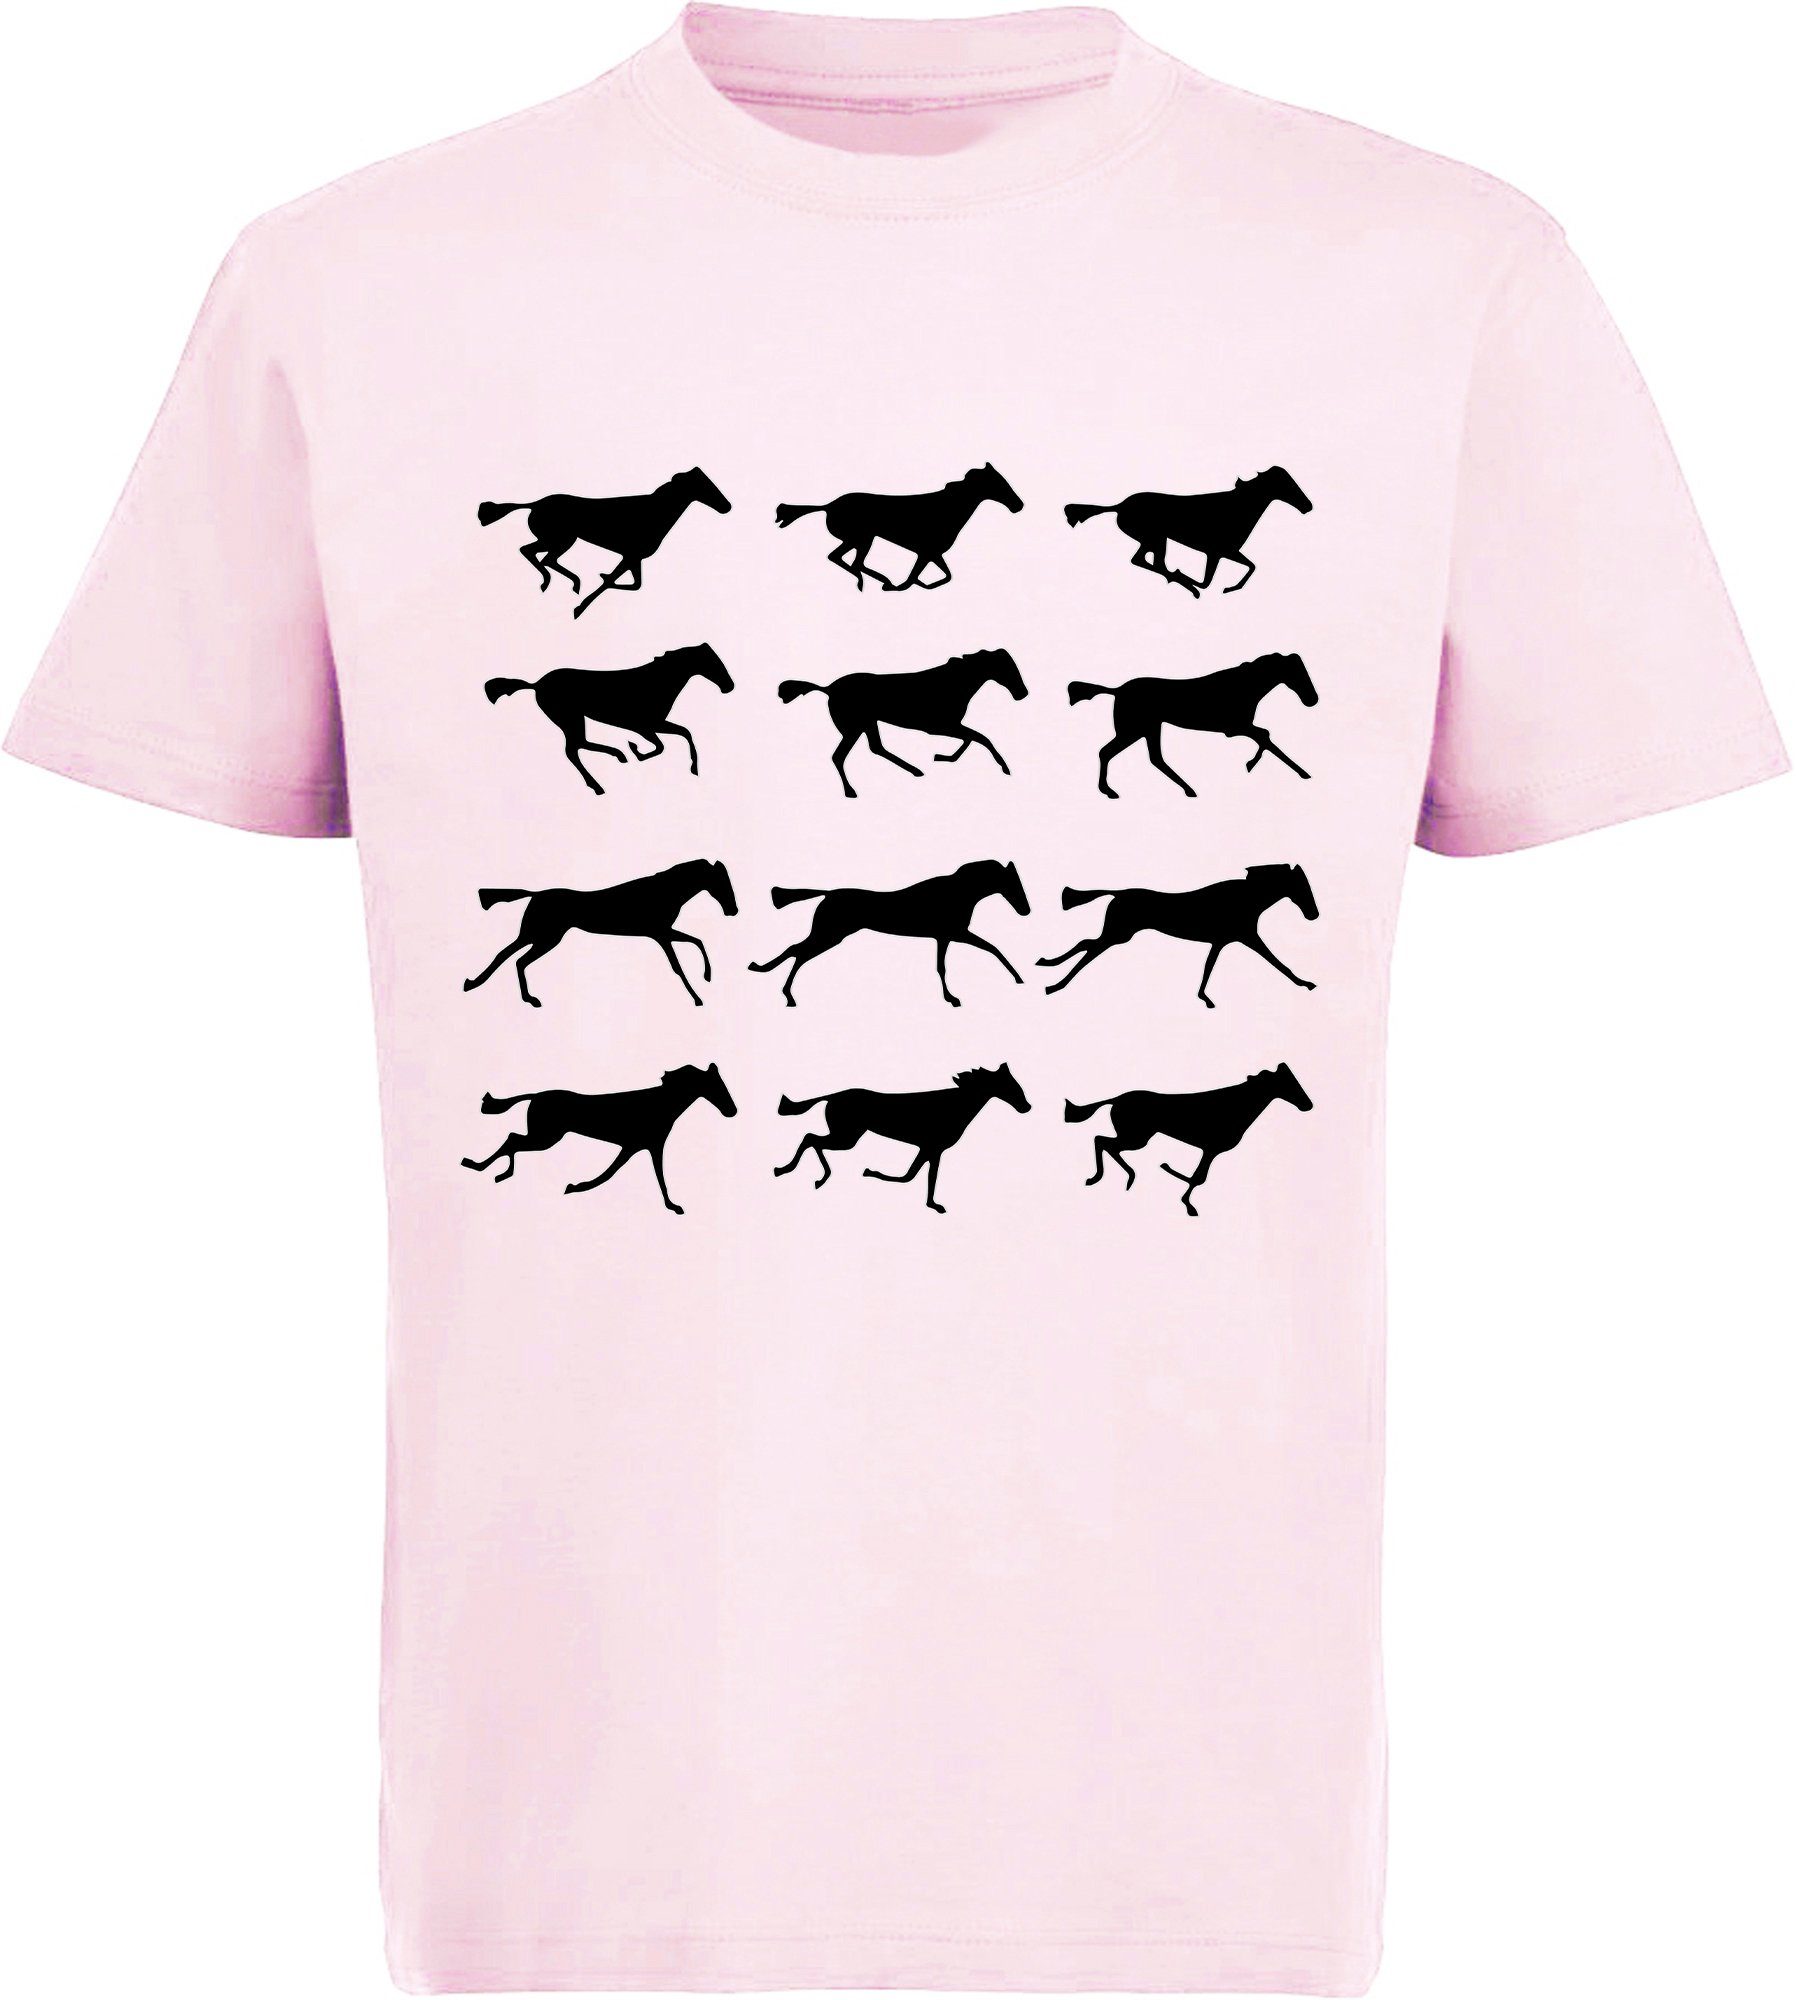 Mädchen mit Pferden Silhouetten von - MyDesign24 Print-Shirt rosa Baumwollshirt Aufdruck, T-Shirt bedrucktes i173